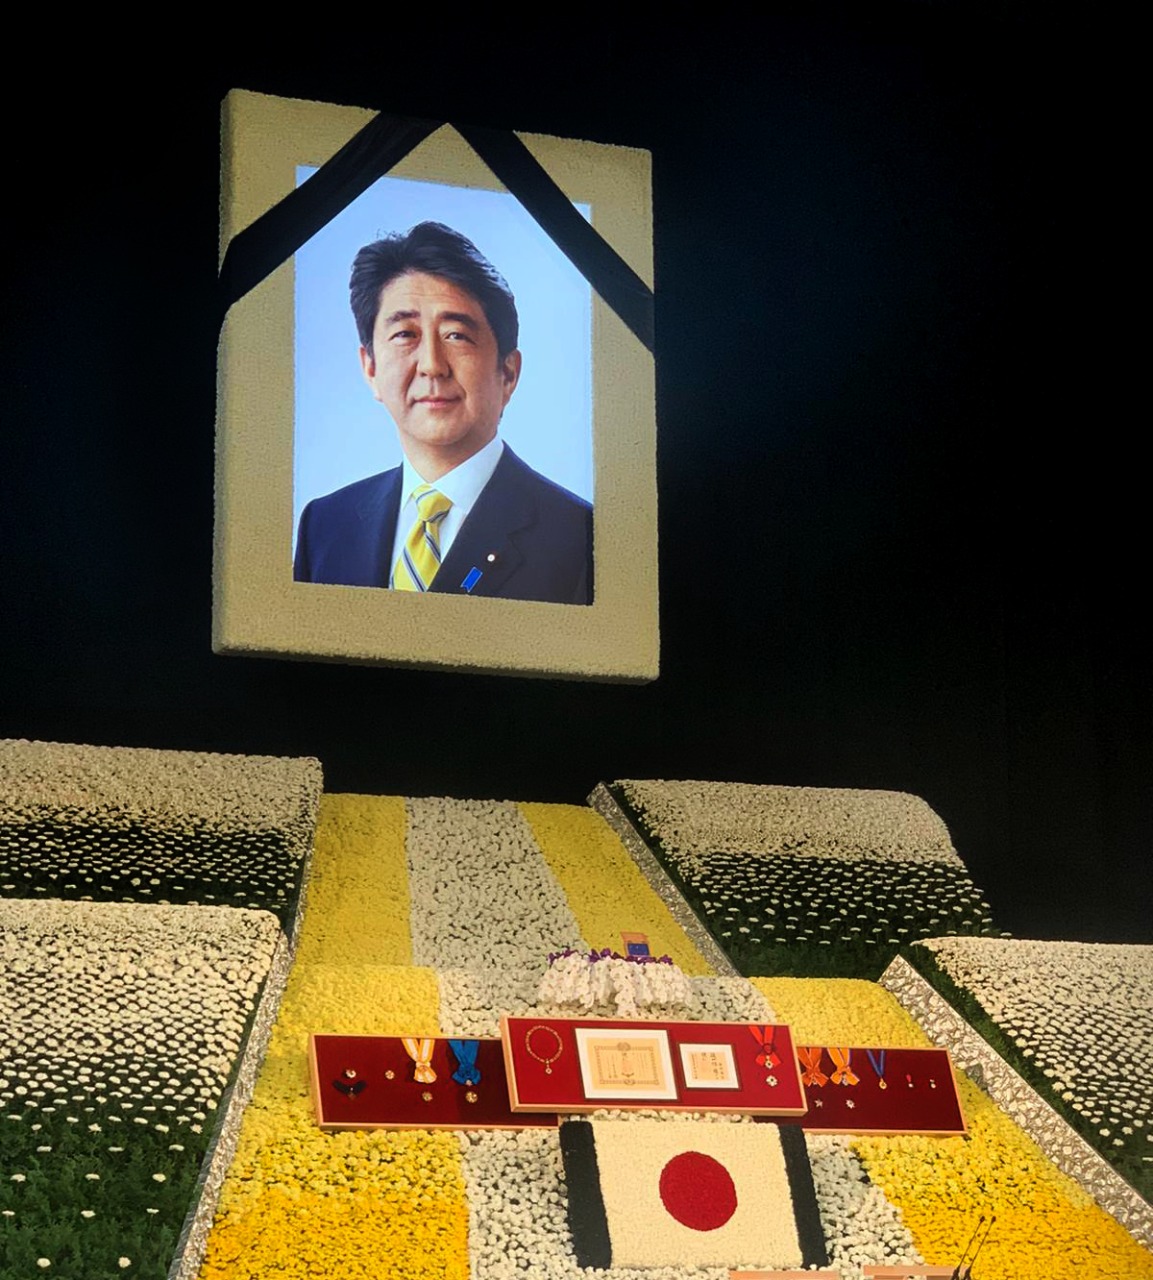 Primera Dama de la Nación representó a Colombia en ceremonia fúnebre organizada por el Estado Japonés en memoria del Ex Primer Ministro, Shintzo Abe